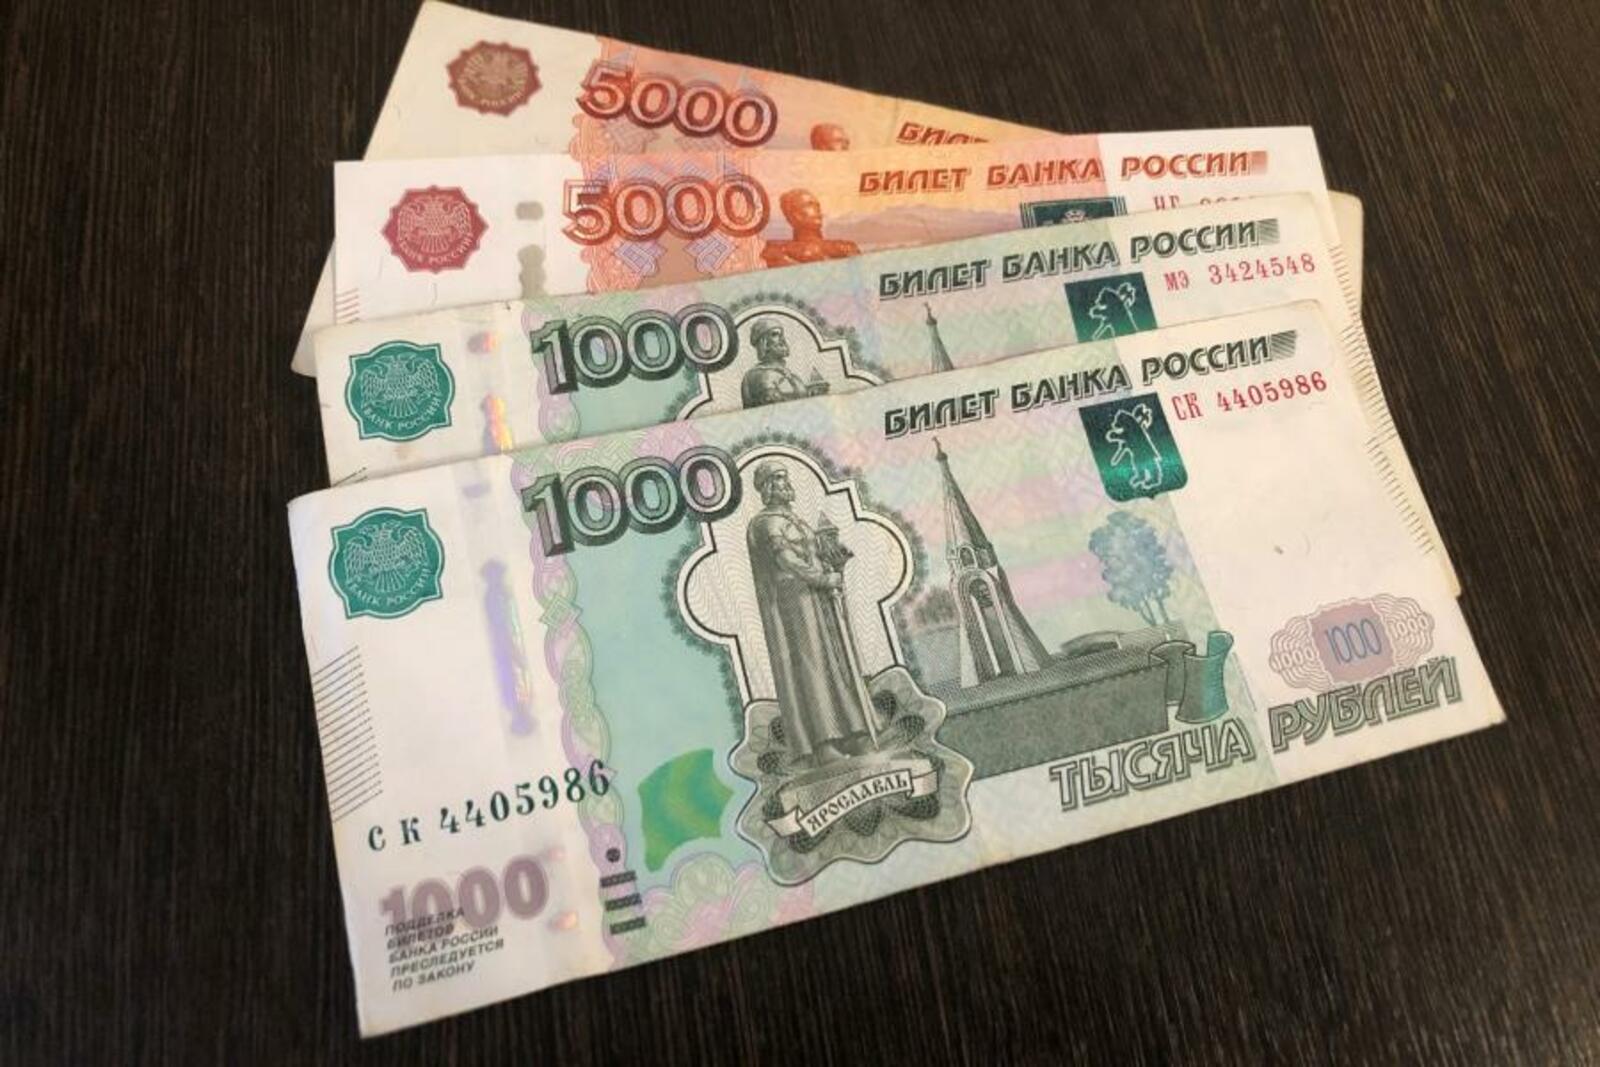 Не работающие граждане получат 14 000 тысяч рублей